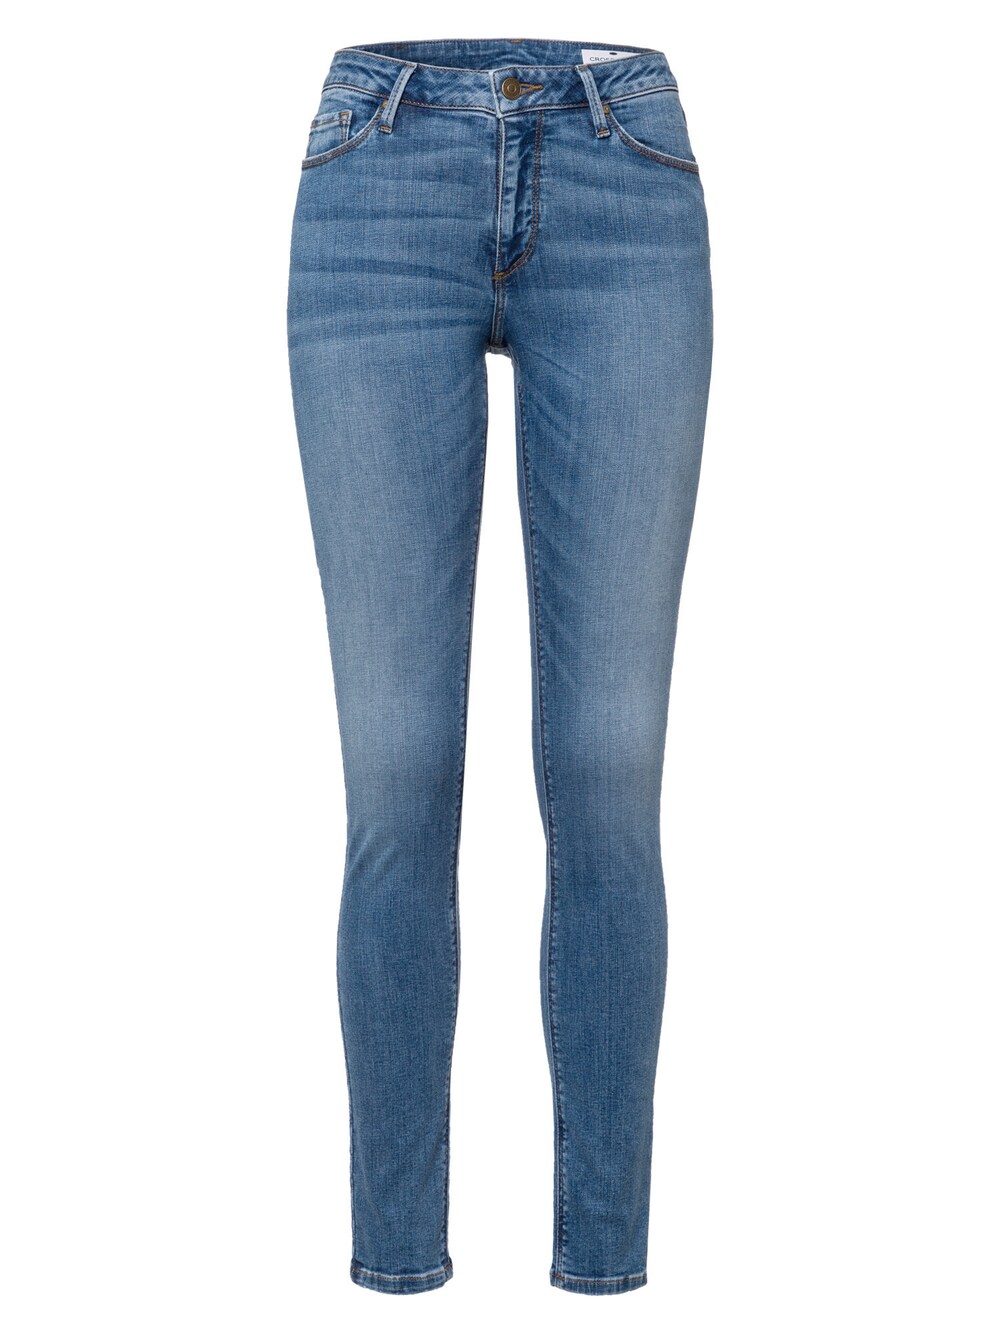 Узкие джинсы Cross Jeans Alan, синий